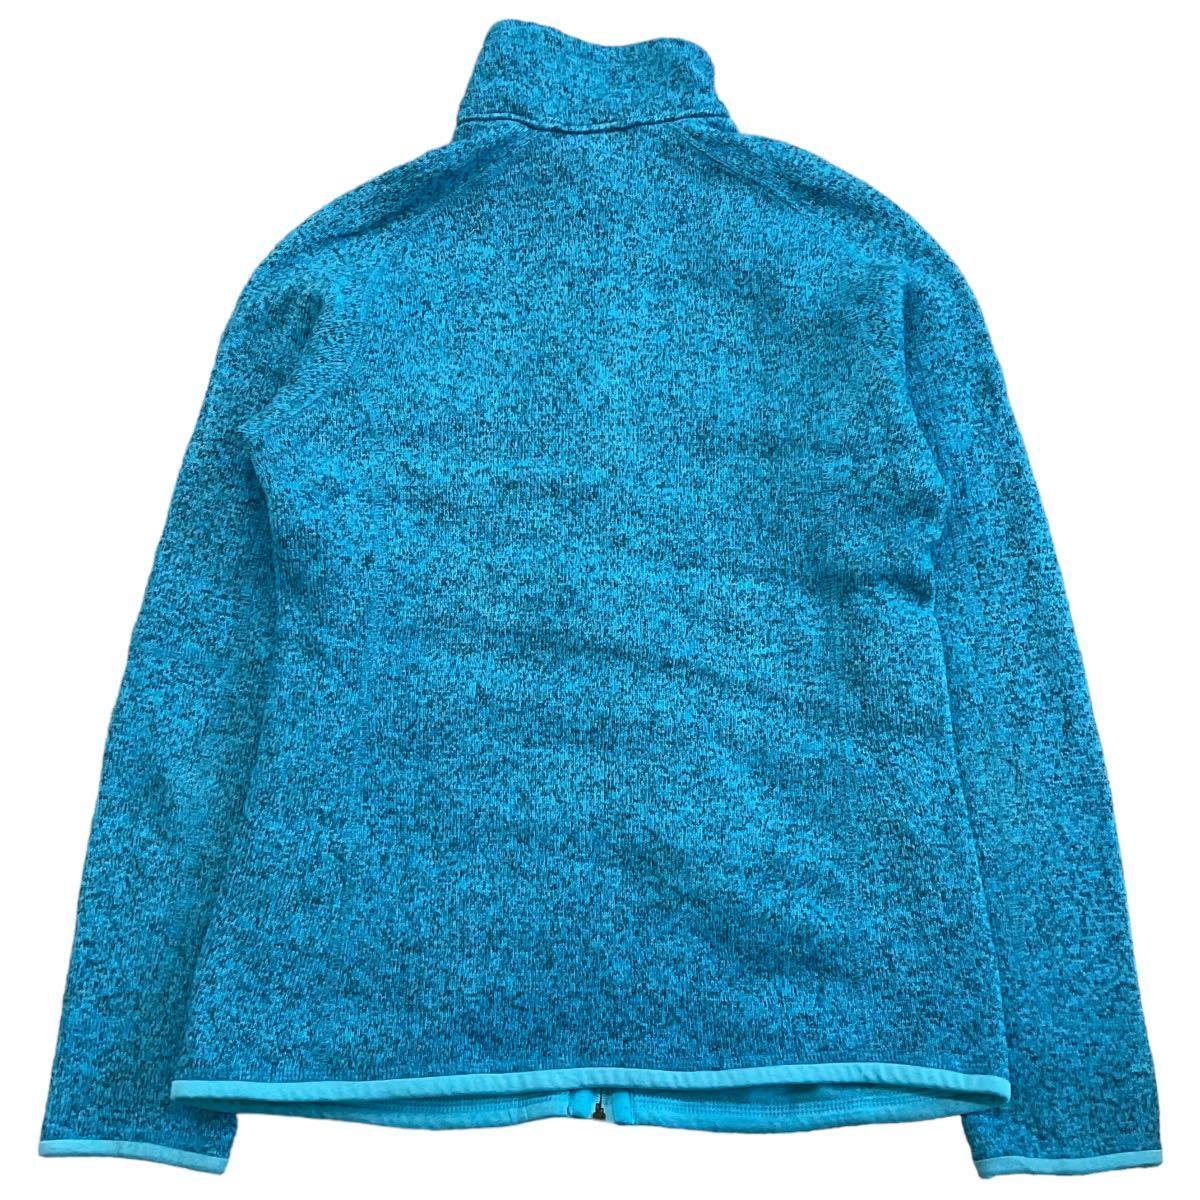 Patagonia ベターセーター XS ターコイズブルー フルジップ ジャケット アウトドア フリース パタゴニア Better Sweater 2015年製 25542_画像7